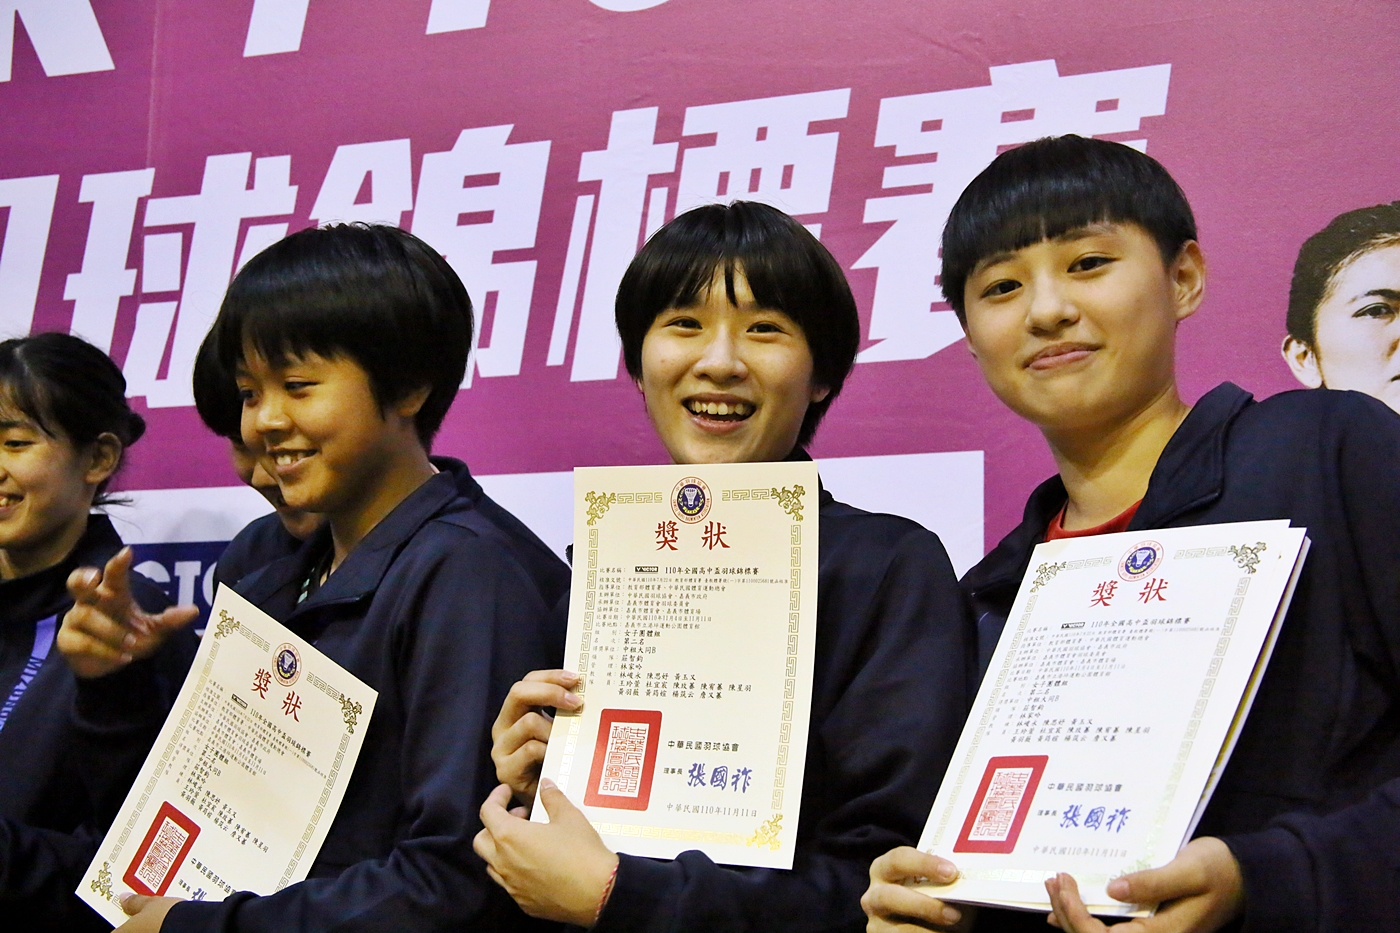  全国高中羽球锦标赛。